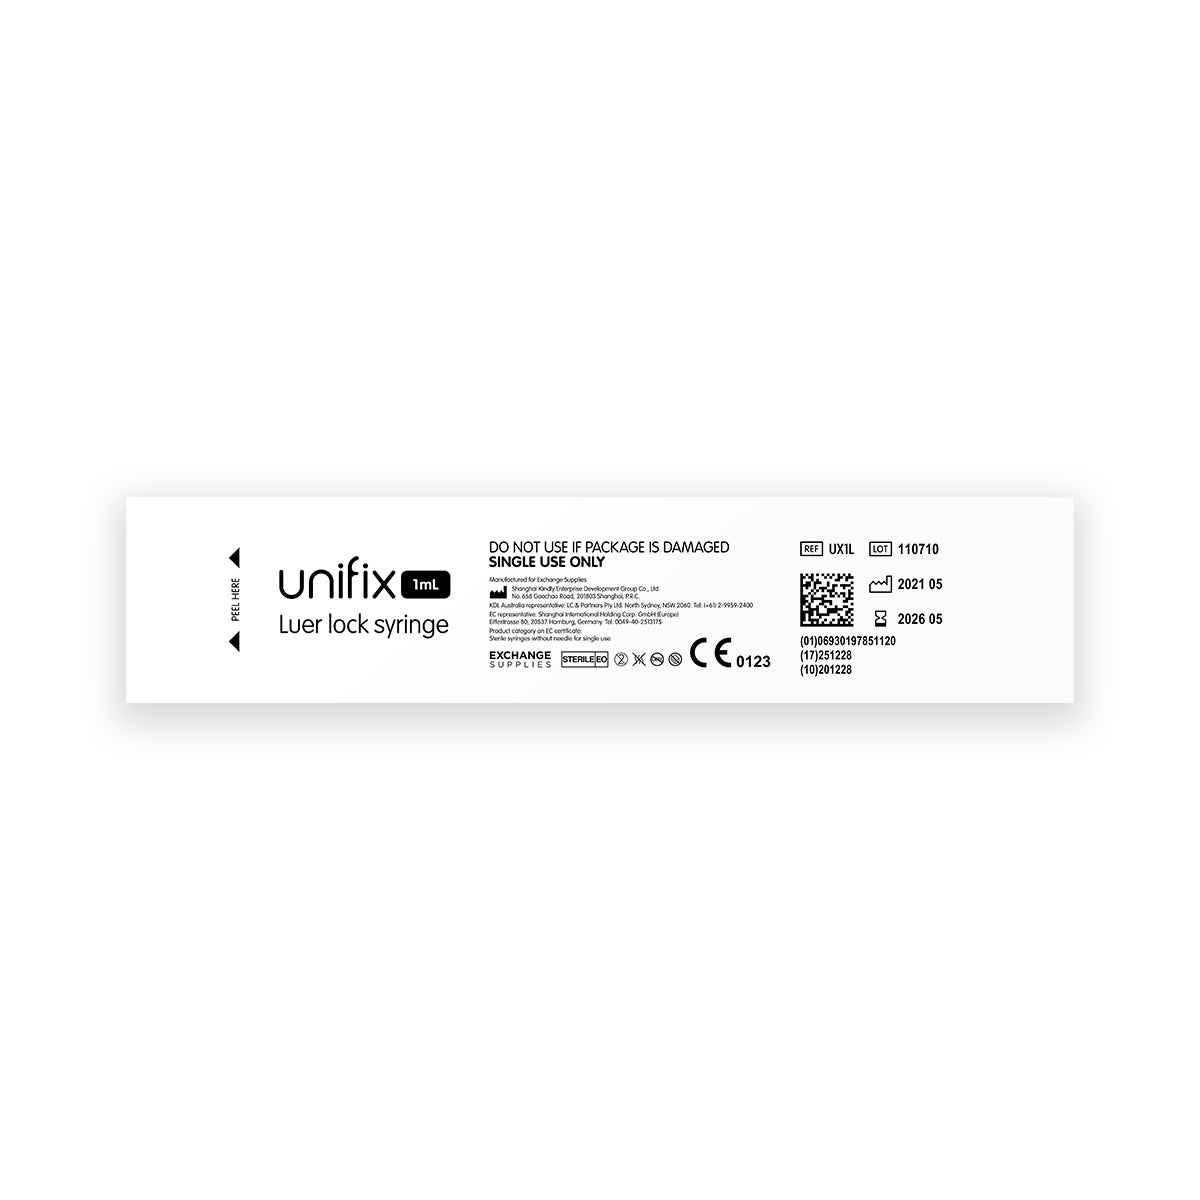 Unifix 1ml Luer Lock Syringe x100 – Medisave UK